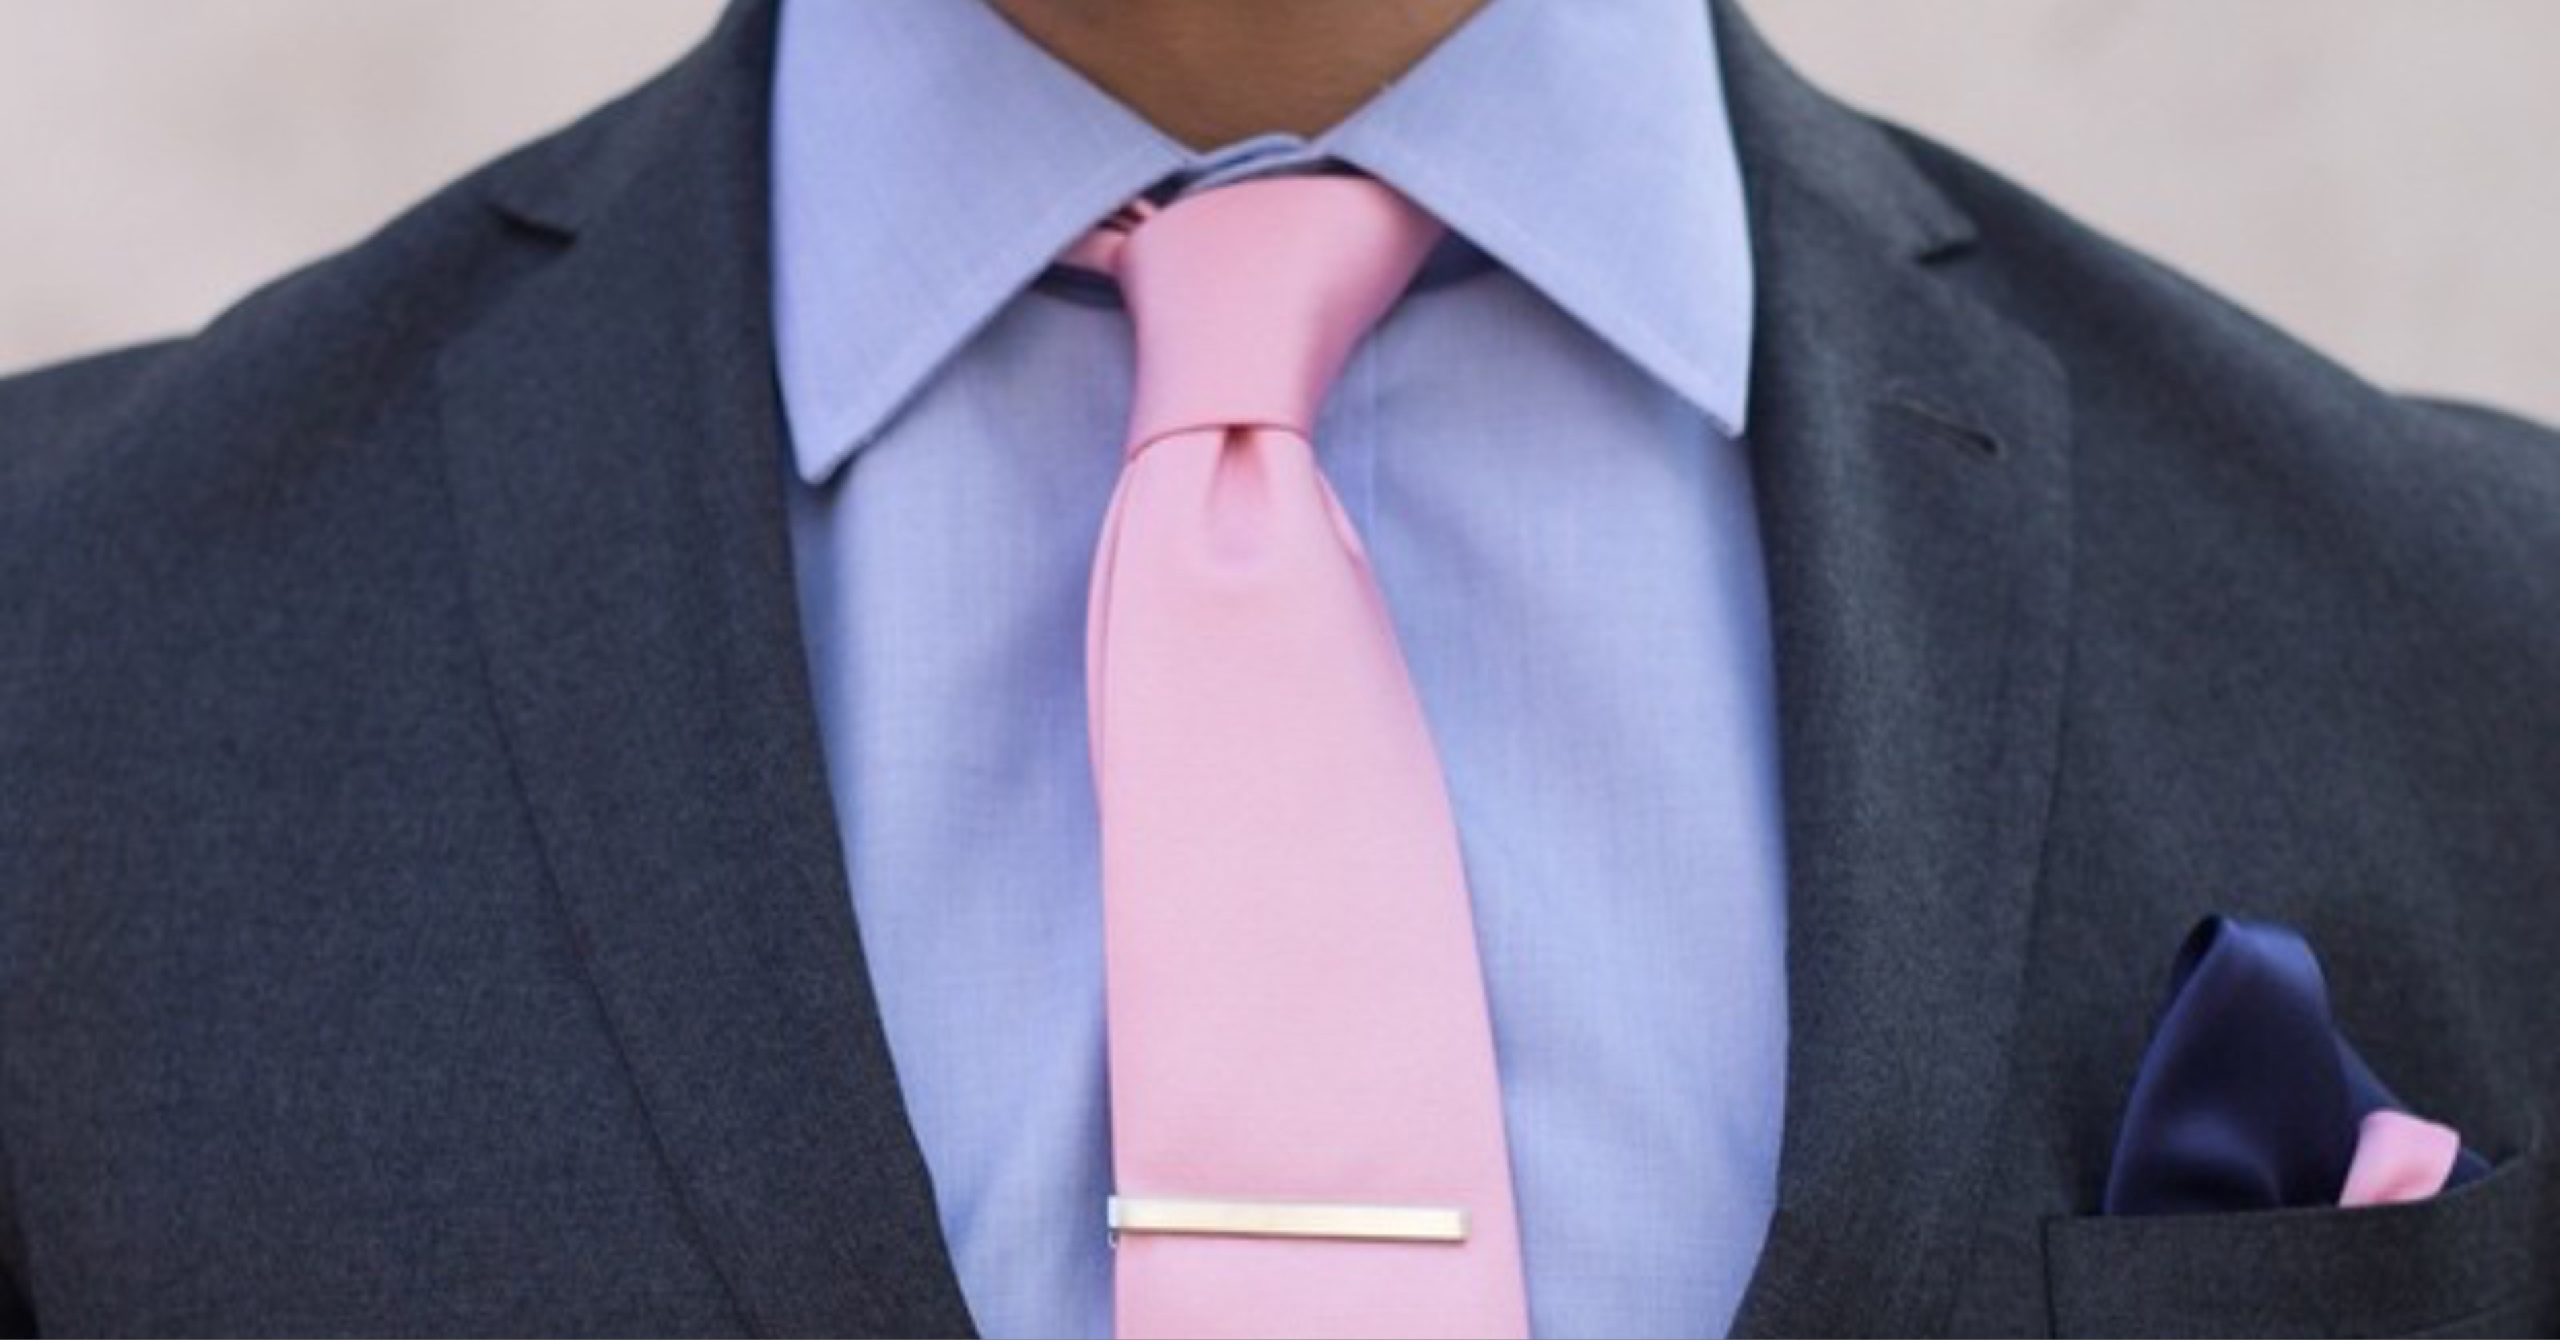 dark knot tie